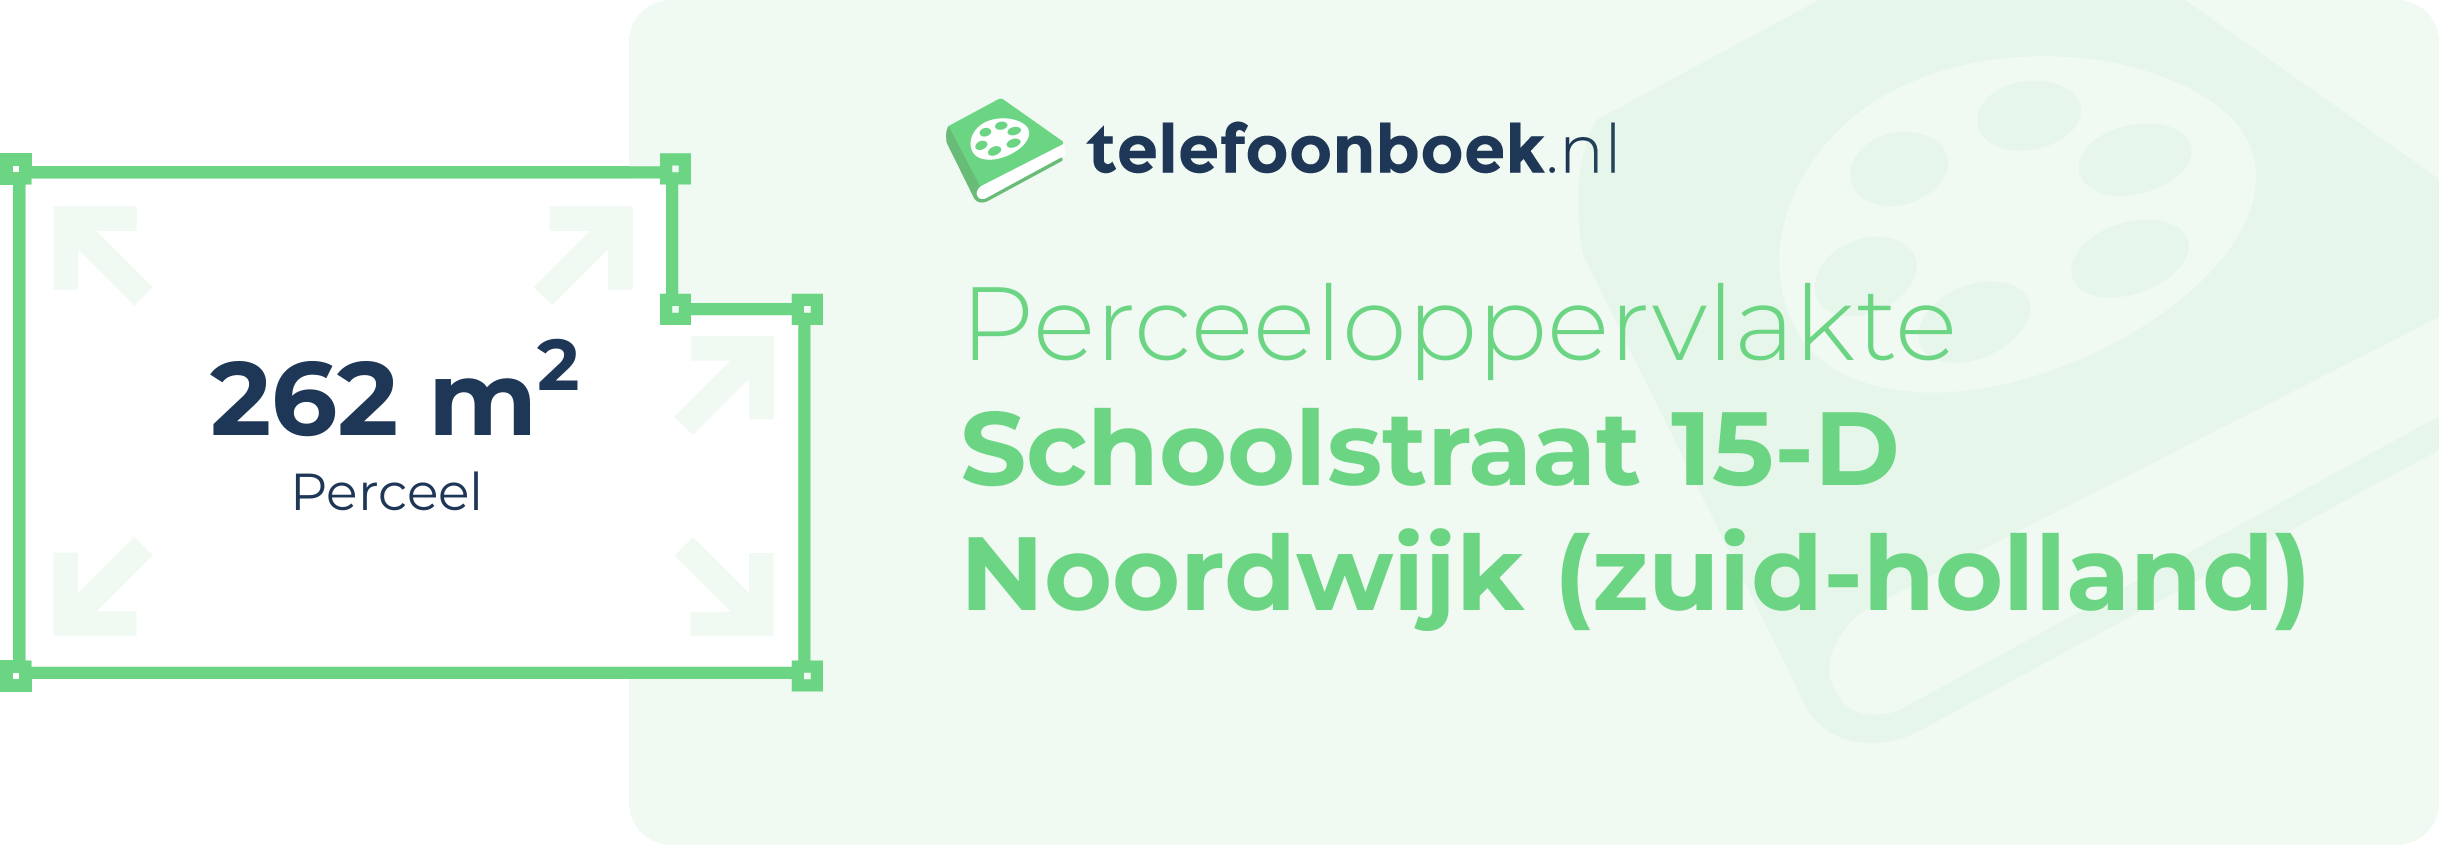 Perceeloppervlakte Schoolstraat 15-D Noordwijk (Zuid-Holland)